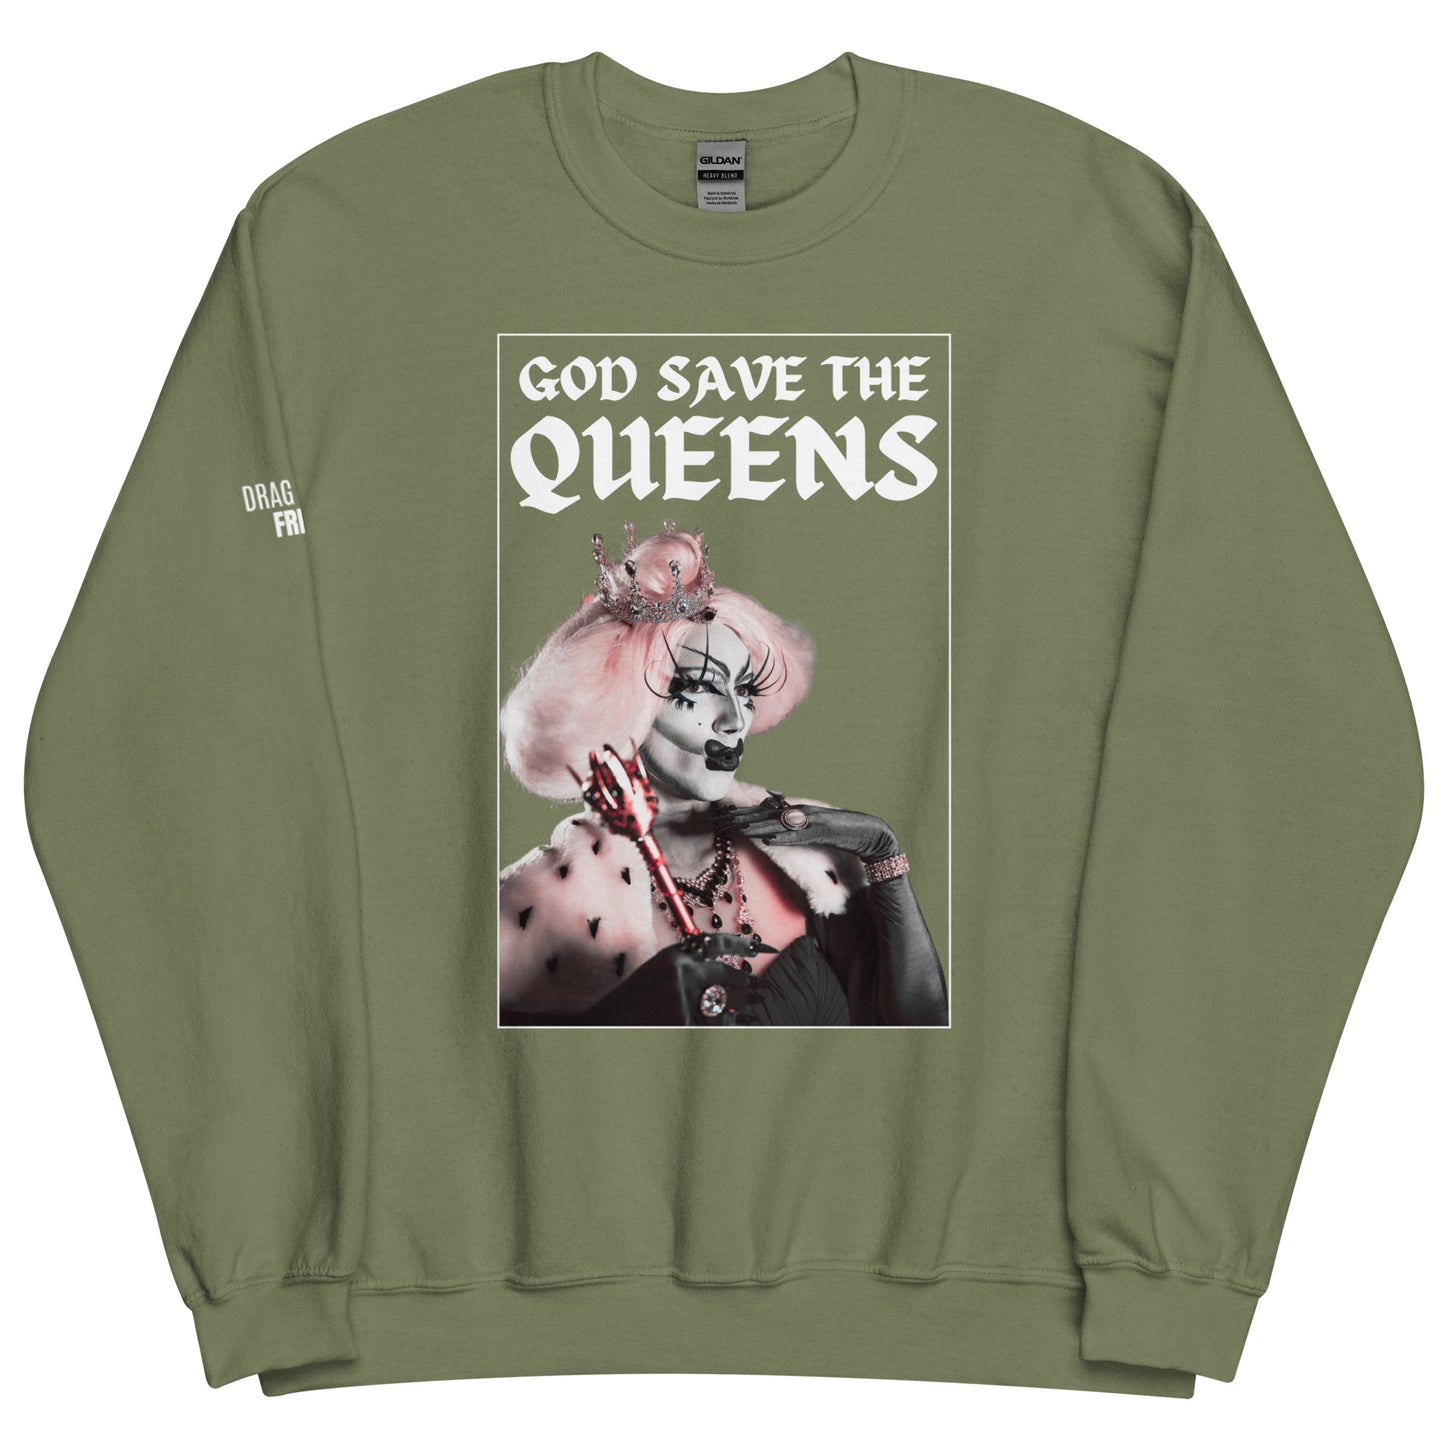 God Save the Queens Unisex Sweatshirt - Dark Colors